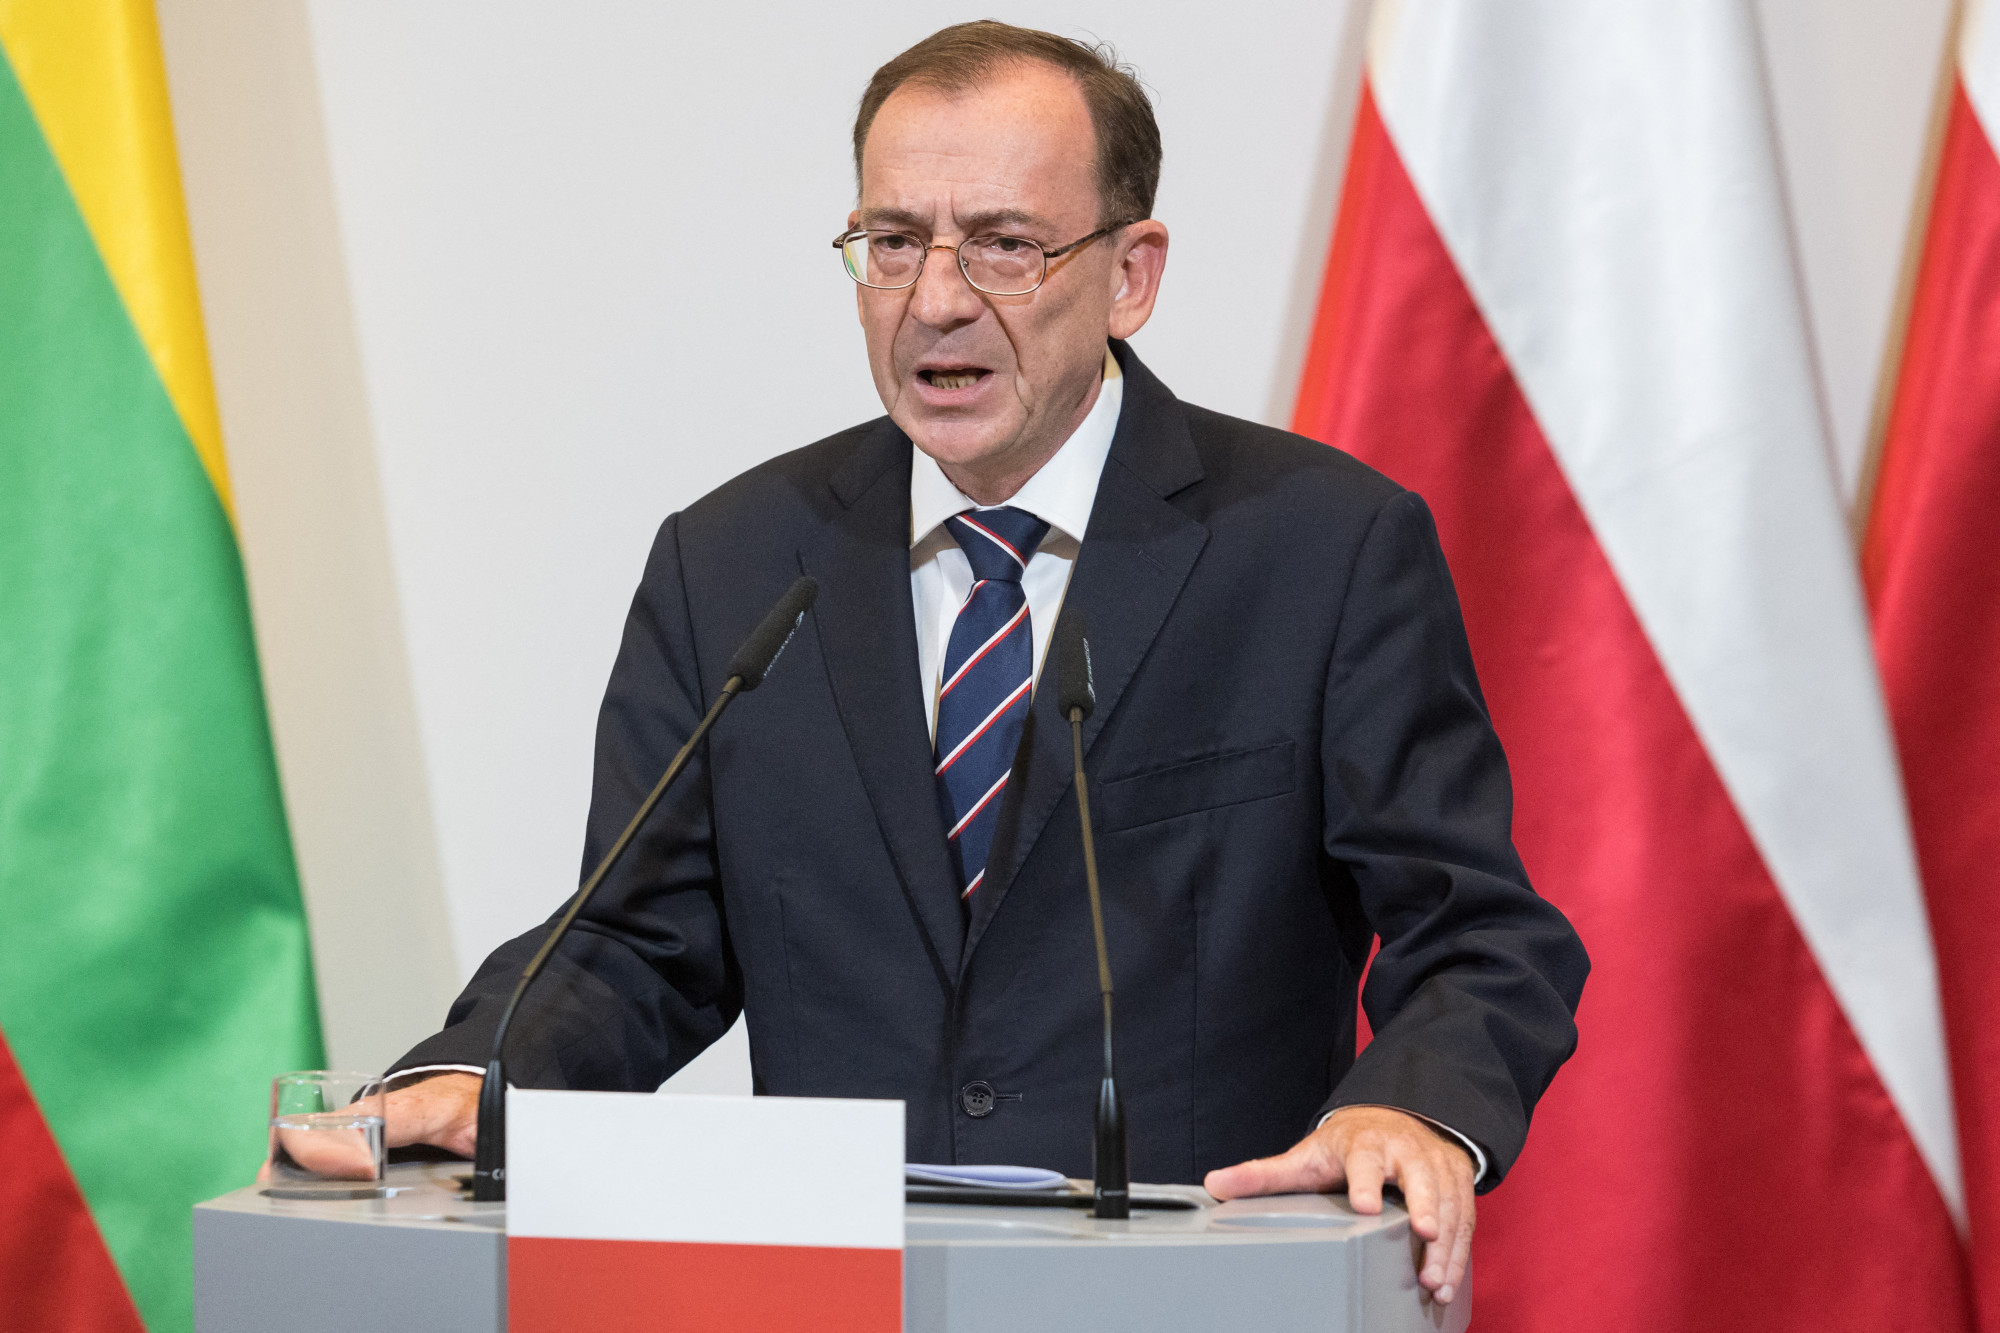 Őrizetbe vette a rendőrség a volt lengyel belügyminisztert és helyettesét